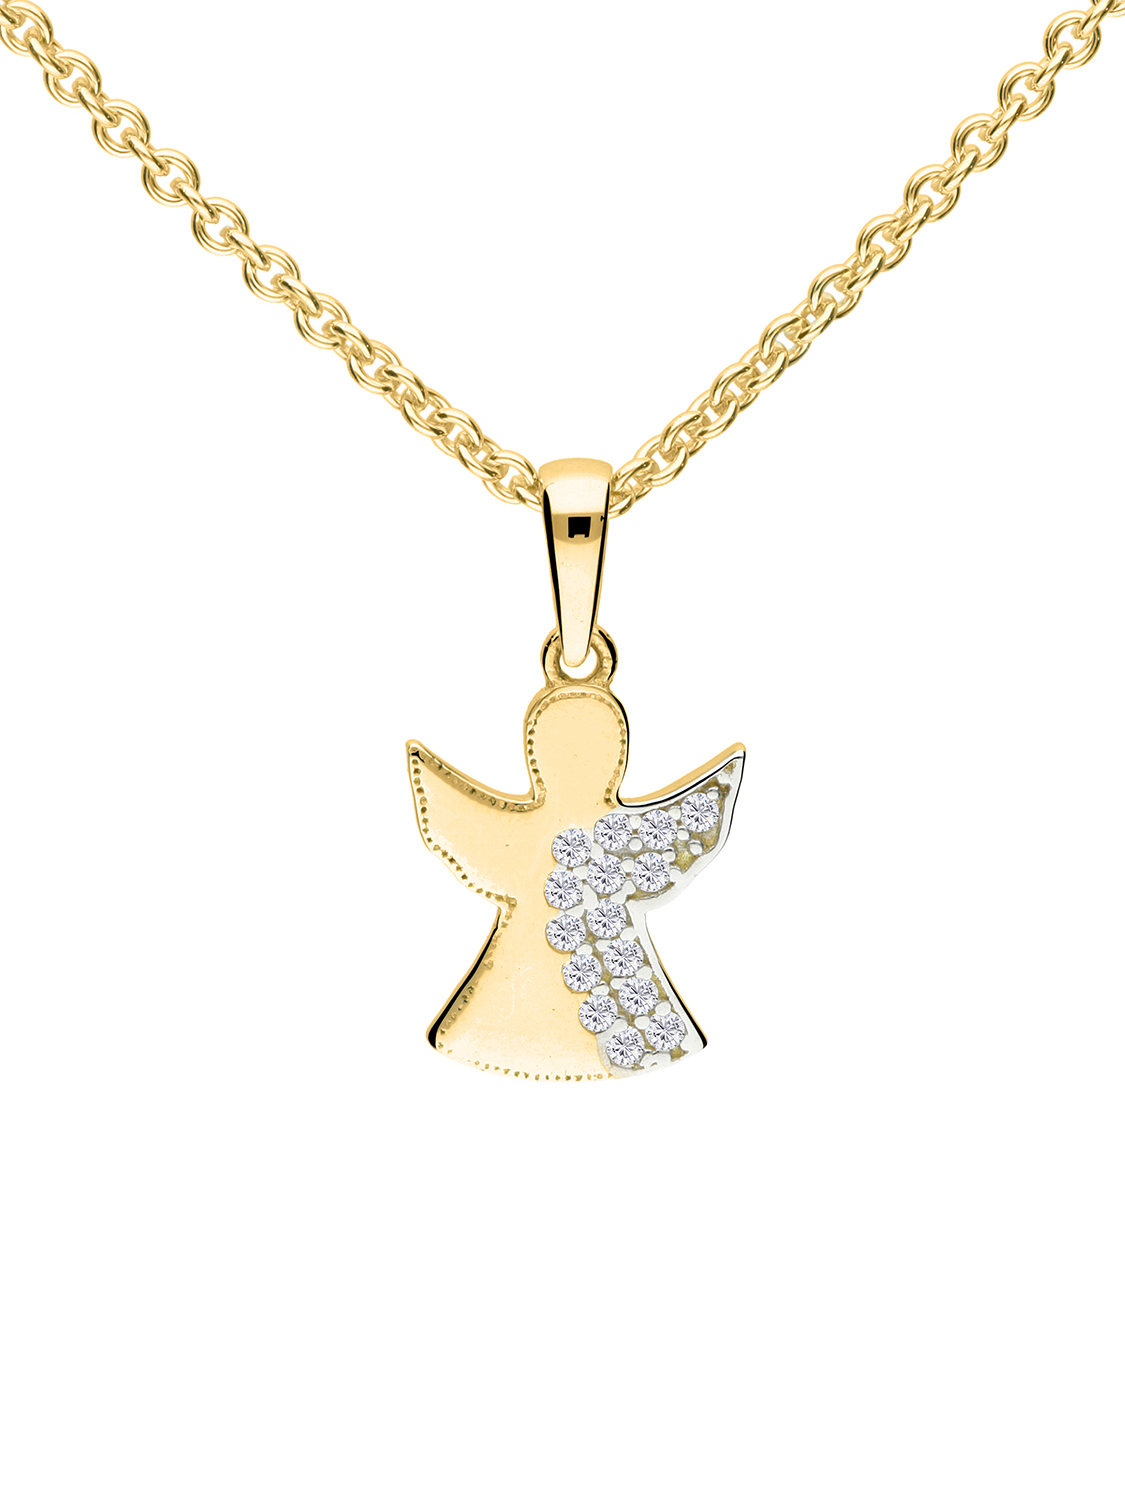 Halskette & Anhänger für Mädchen aus echtem Gelbgold mit Zirkonia - Sweet Angel | Produktansicht